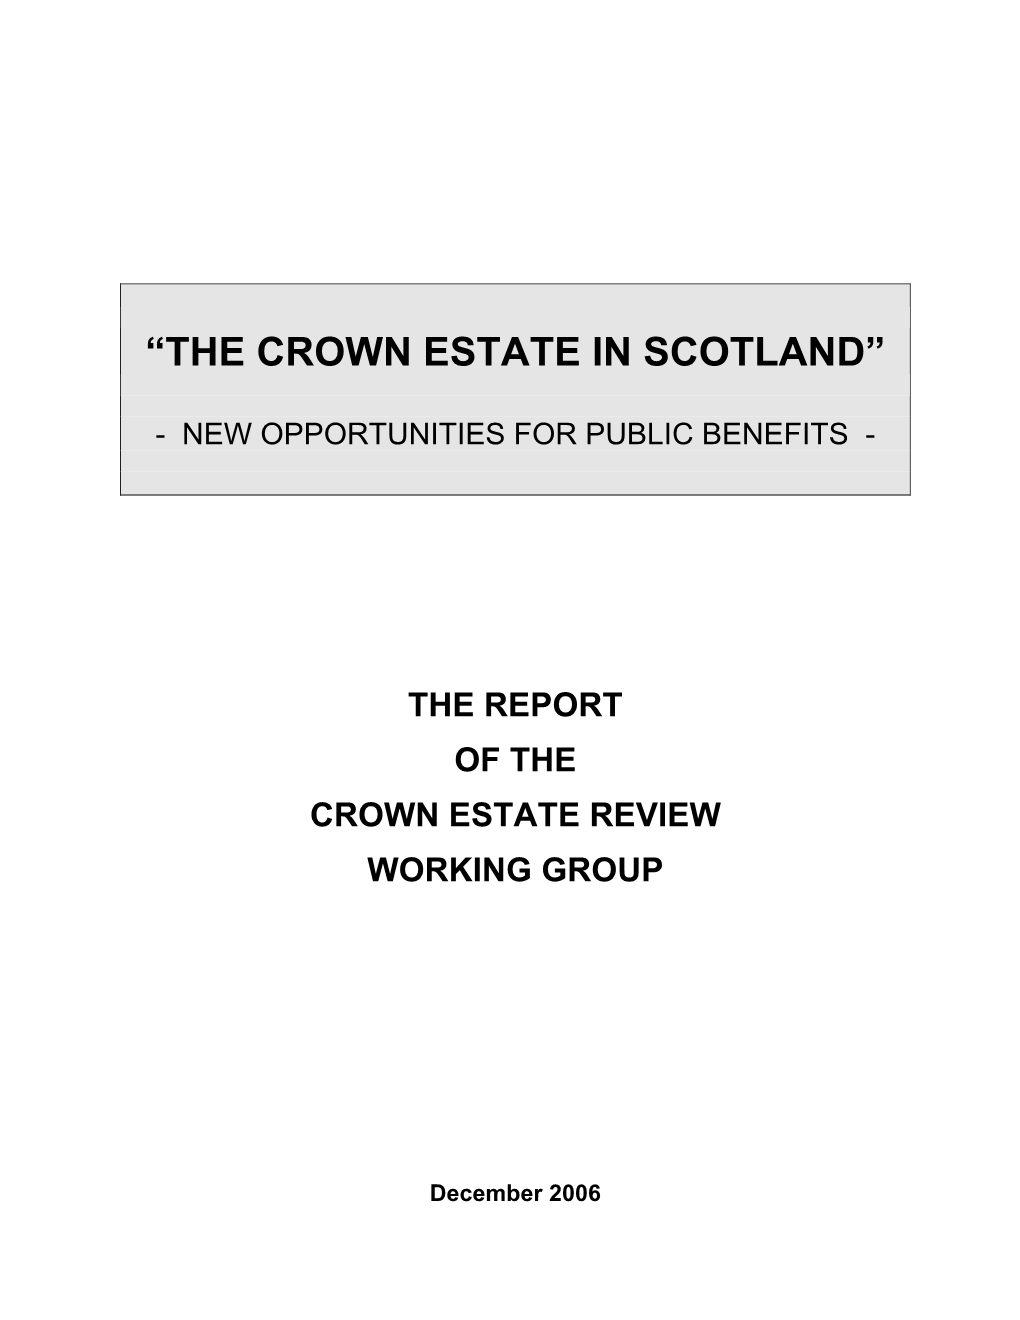 The Crown Estate in Scotland”